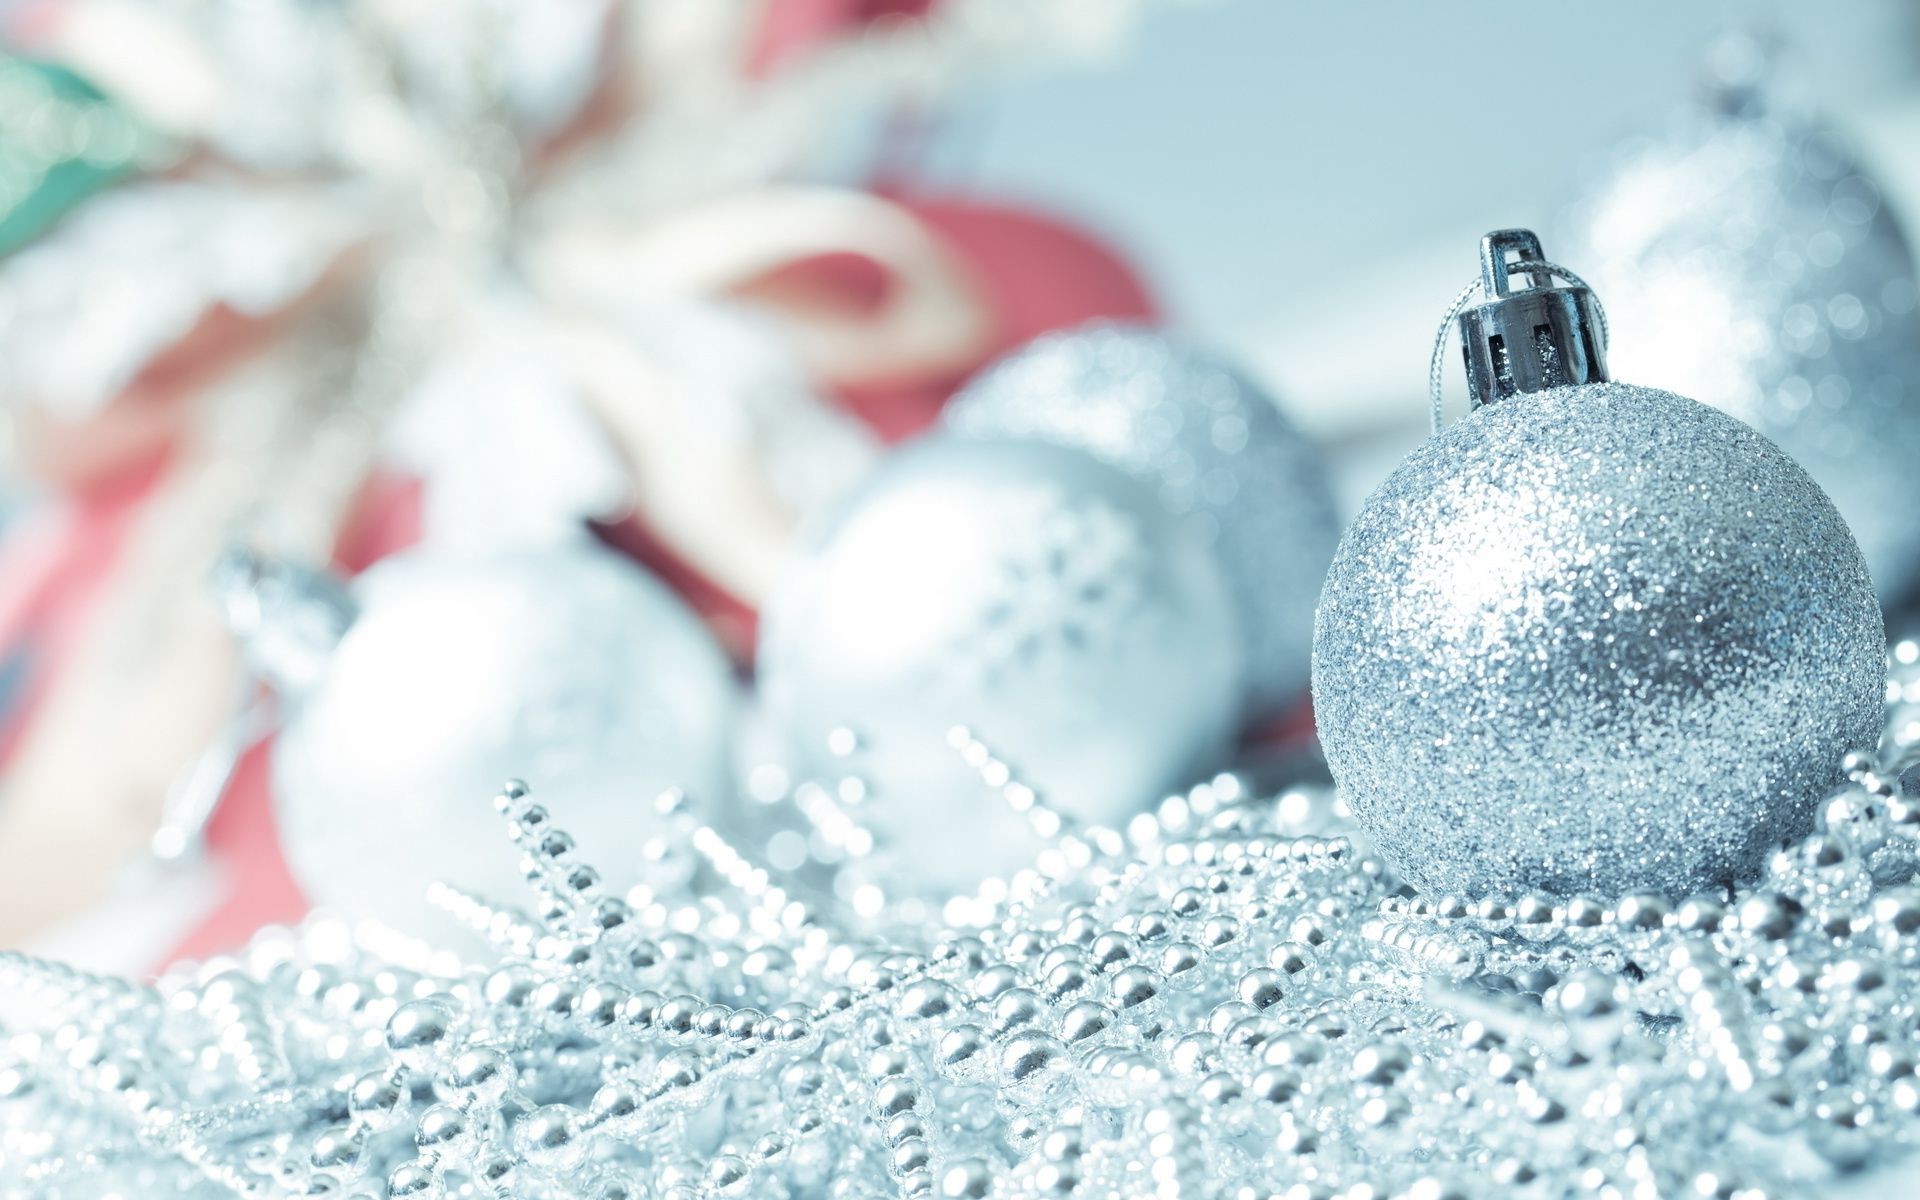 новый год зима рождество мяч светит снег праздник блестят украшения нить сфера мерри браслет снежинка мороз лук сезон традиционные подарок